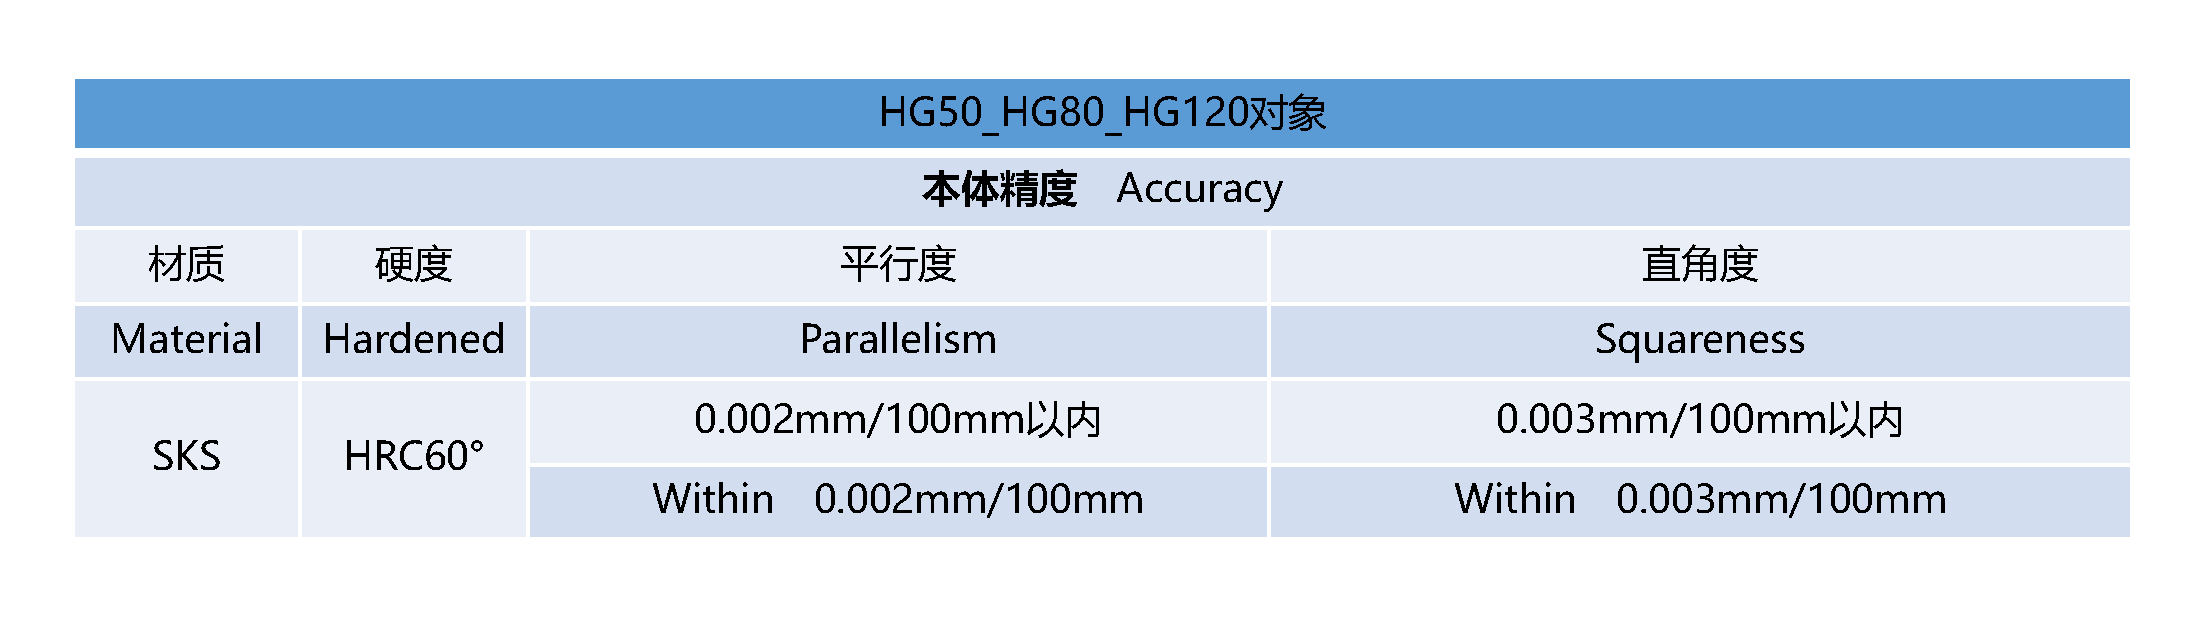 HG50_HG80_HG120_精度表- 中文.png